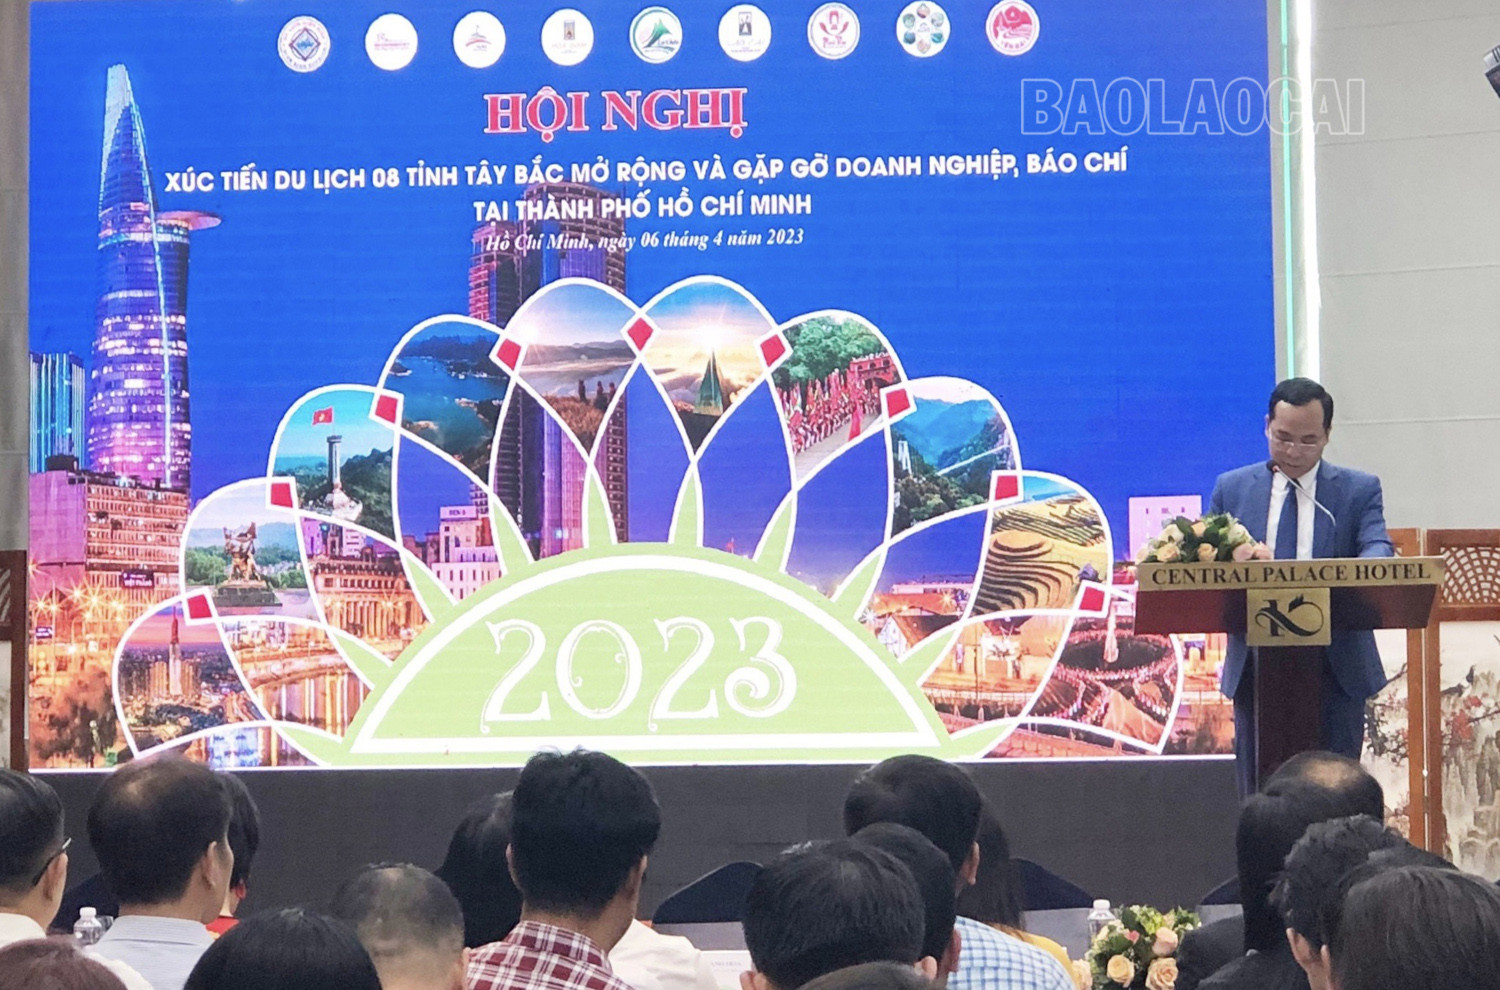 Lào Cai chủ trì Hội nghị Xúc tiến du lịch 8 tỉnh Tây Bắc mở rộng – Thành phố Hồ Chí Minh - Ảnh 3.